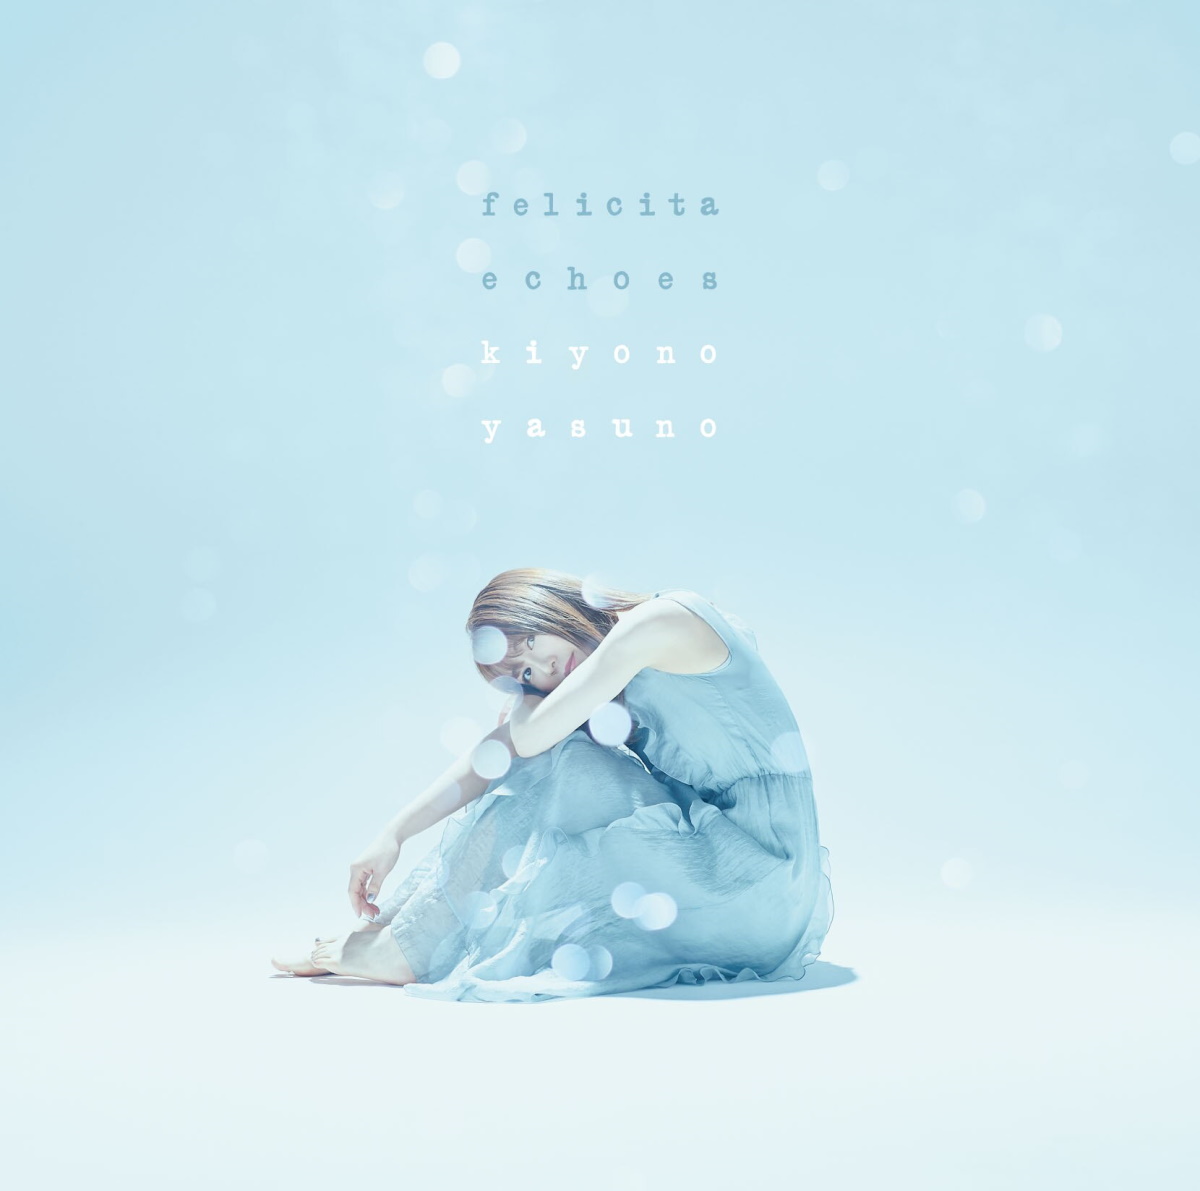 Cover for『Kiyono Yasuno - felicita』from the release『felicita / echoes』